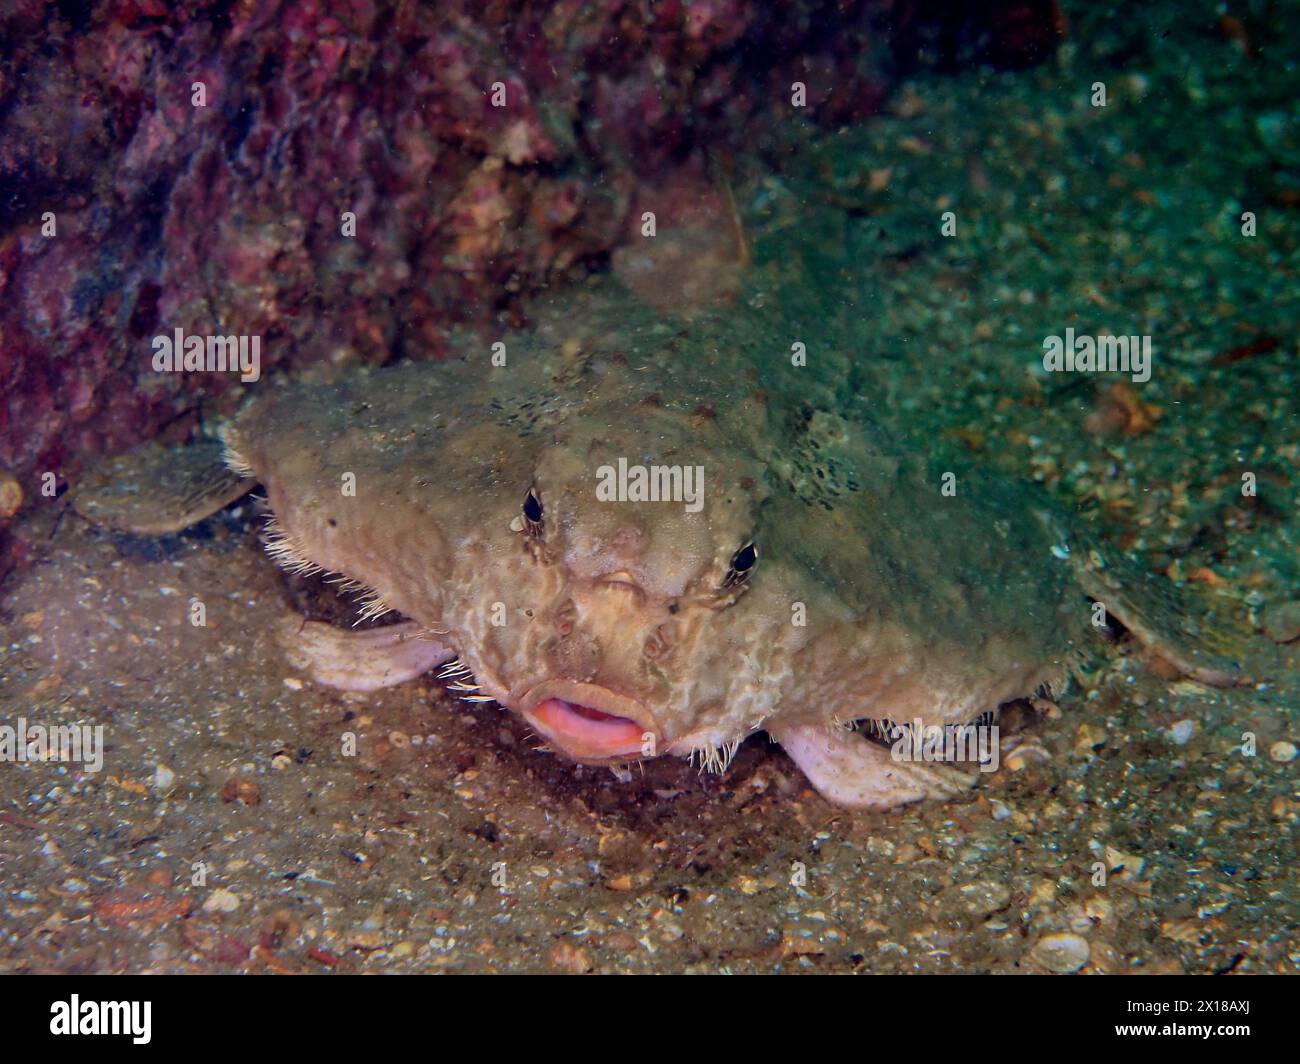 Chauve-souris Rolex Reef (Ogcocephalus parvus), chauve-souris de mer, site de plongée Rolex Reef, destin, Panhandle, Golfe du Mexique, Floride, ÉTATS-UNIS Banque D'Images